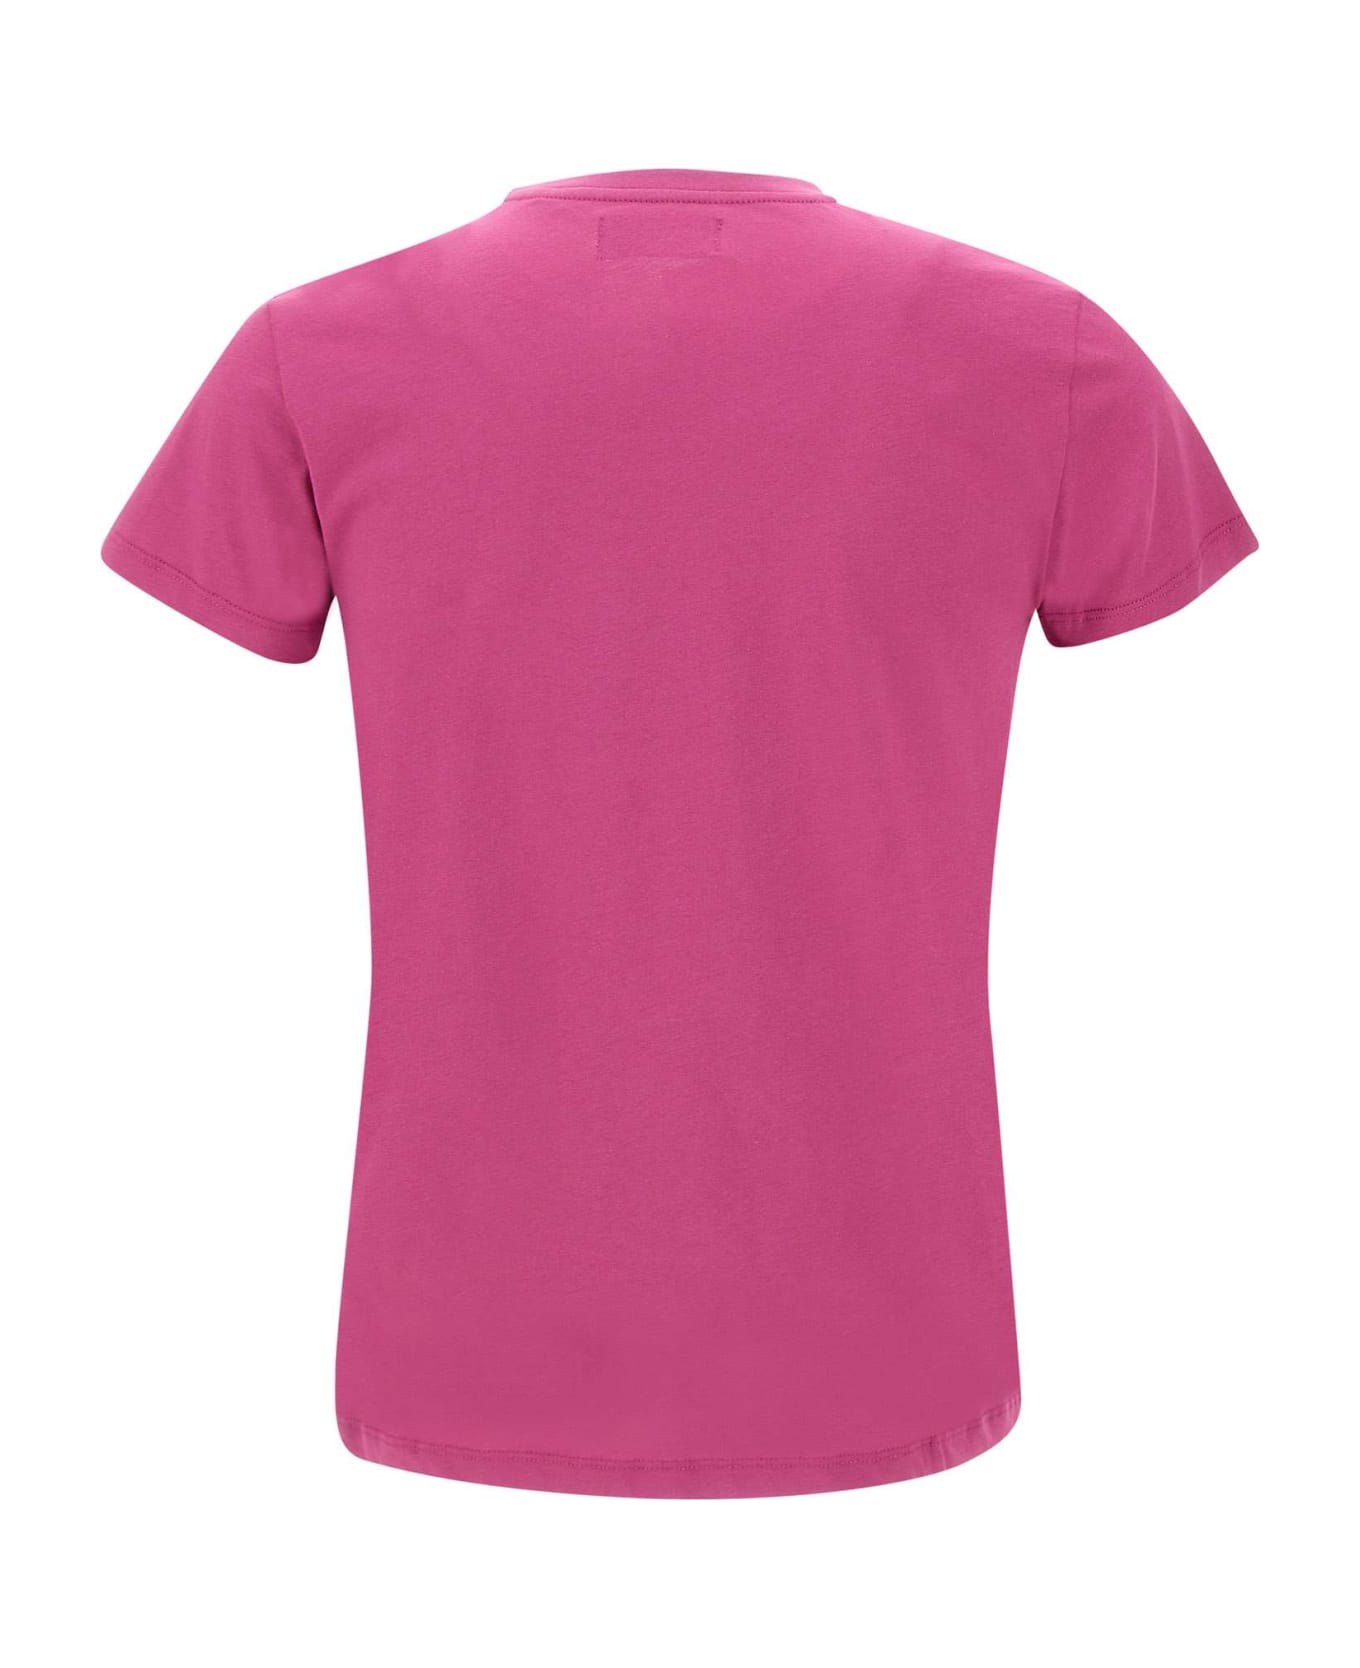 Vilebrequin Cotton T-shirt - FUCHSIA